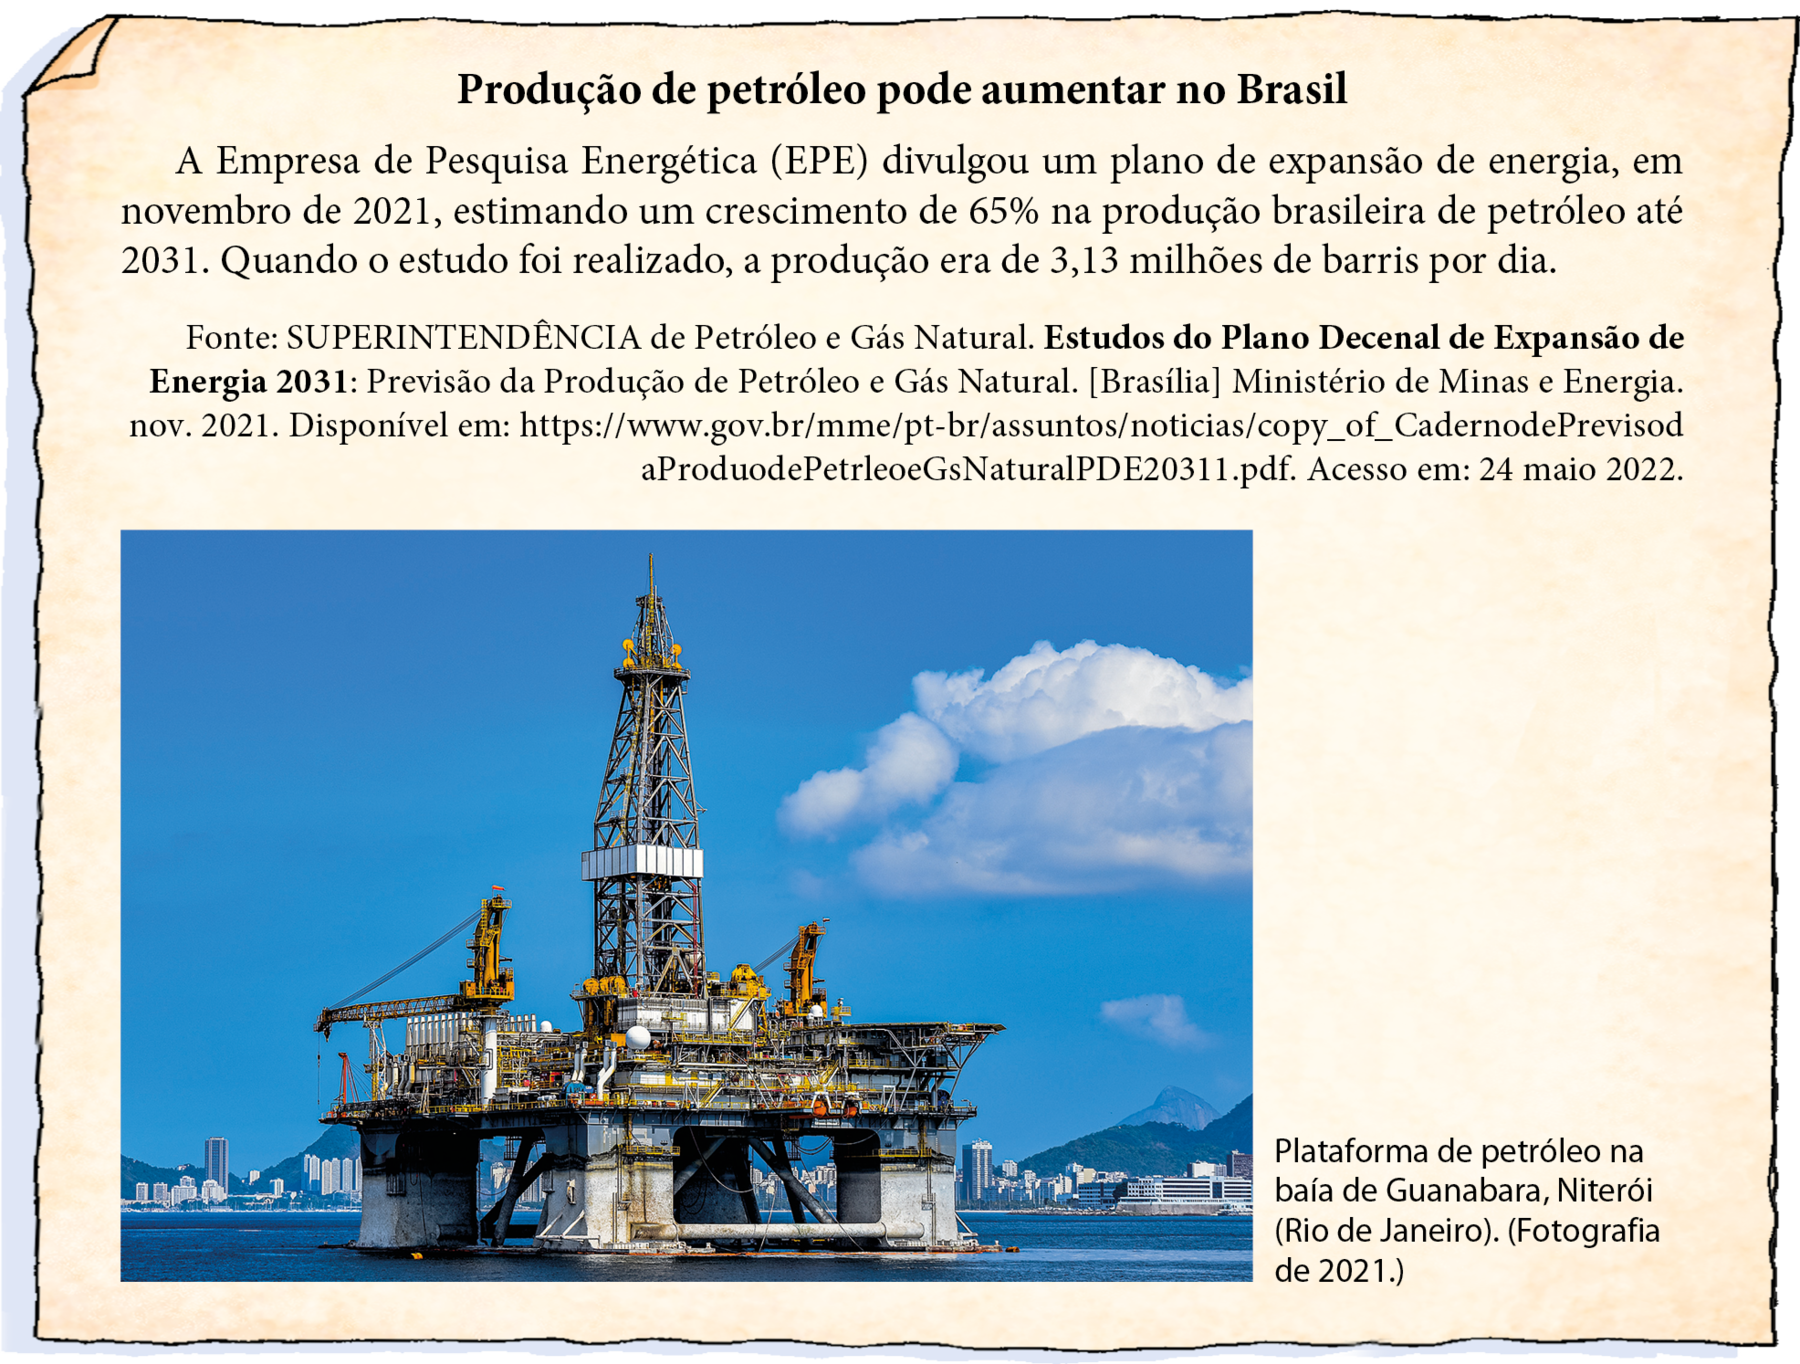 Ilustração. Notícia em folha de papel amarelado. Título: Produção de petróleo pode aumentar no Brasil. Texto da notícia: A Empresa de Pesquisa Energética (EPE) divulgou um plano de expansão de energia, em novembro de 2021, estimando um crescimento de 65% na produção brasileira de petróleo até 2031. Quando o estudo foi realizado, a produção era de 3,13 milhões de barris por dia. Fonte da notícia: Fonte: SUPERINTENDÊNCIA de Petróleo e Gás Natural. Estudos do Plano Decenal de Expansão de Energia 2031: Previsão da Produção de Petróleo e Gás Natural. [Brasília] Ministério de Minas e Energia. nov. 2021. Disponível em: https://www.gov.br/mme/pt-br/assuntos/noticias/copy_of_CadernodePrevisod aProduodePetrleoeGsNaturalPDE20311.pdf. Acesso em: 24 maio 2022. Abaixo, há uma fotografia de uma Plataforma de Petróleo no mar, com base retangular sustentada por 4 pilares um em cada ponta da base. Ela possui uma torre alta no centro. Céu azul com poucas nuvens e ao fundo,  e construções e morros. Uma legenda diz: Plataforma de petróleo na baía de Guanabara, Niterói (Rio de Janeiro). (Fotografia de 2021.)